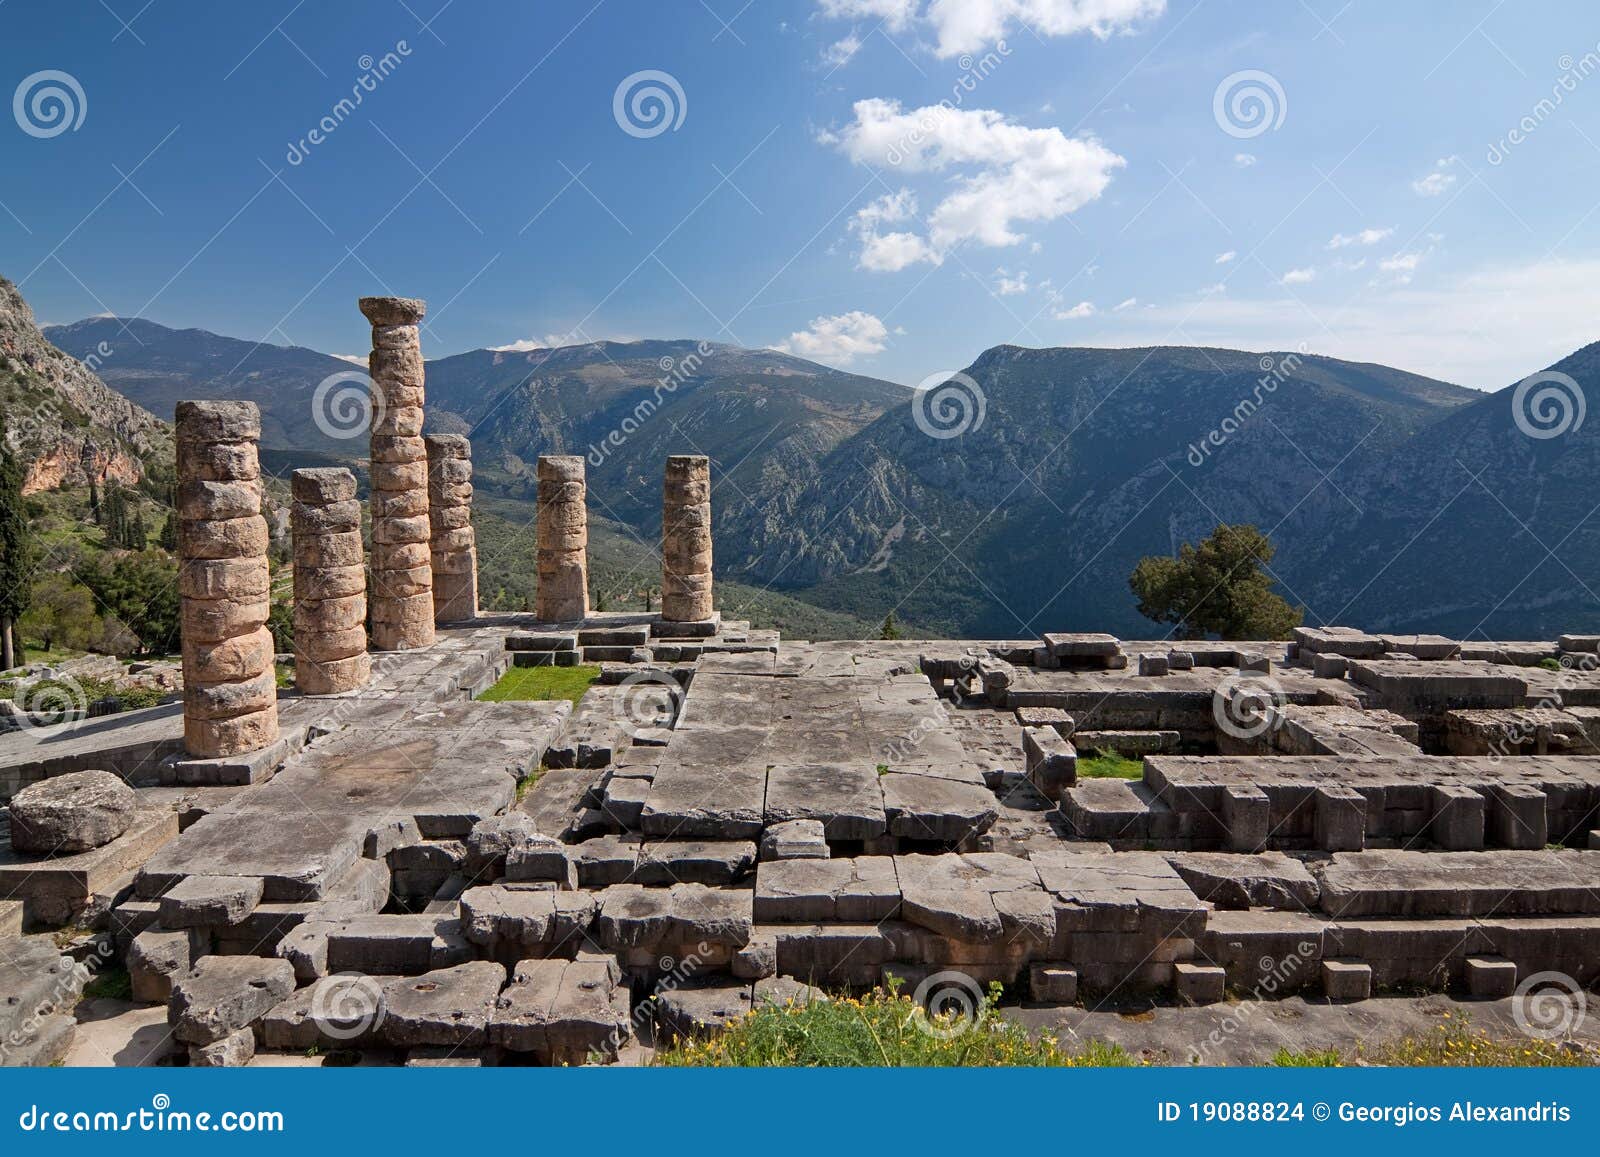 delphi, temple of apollo